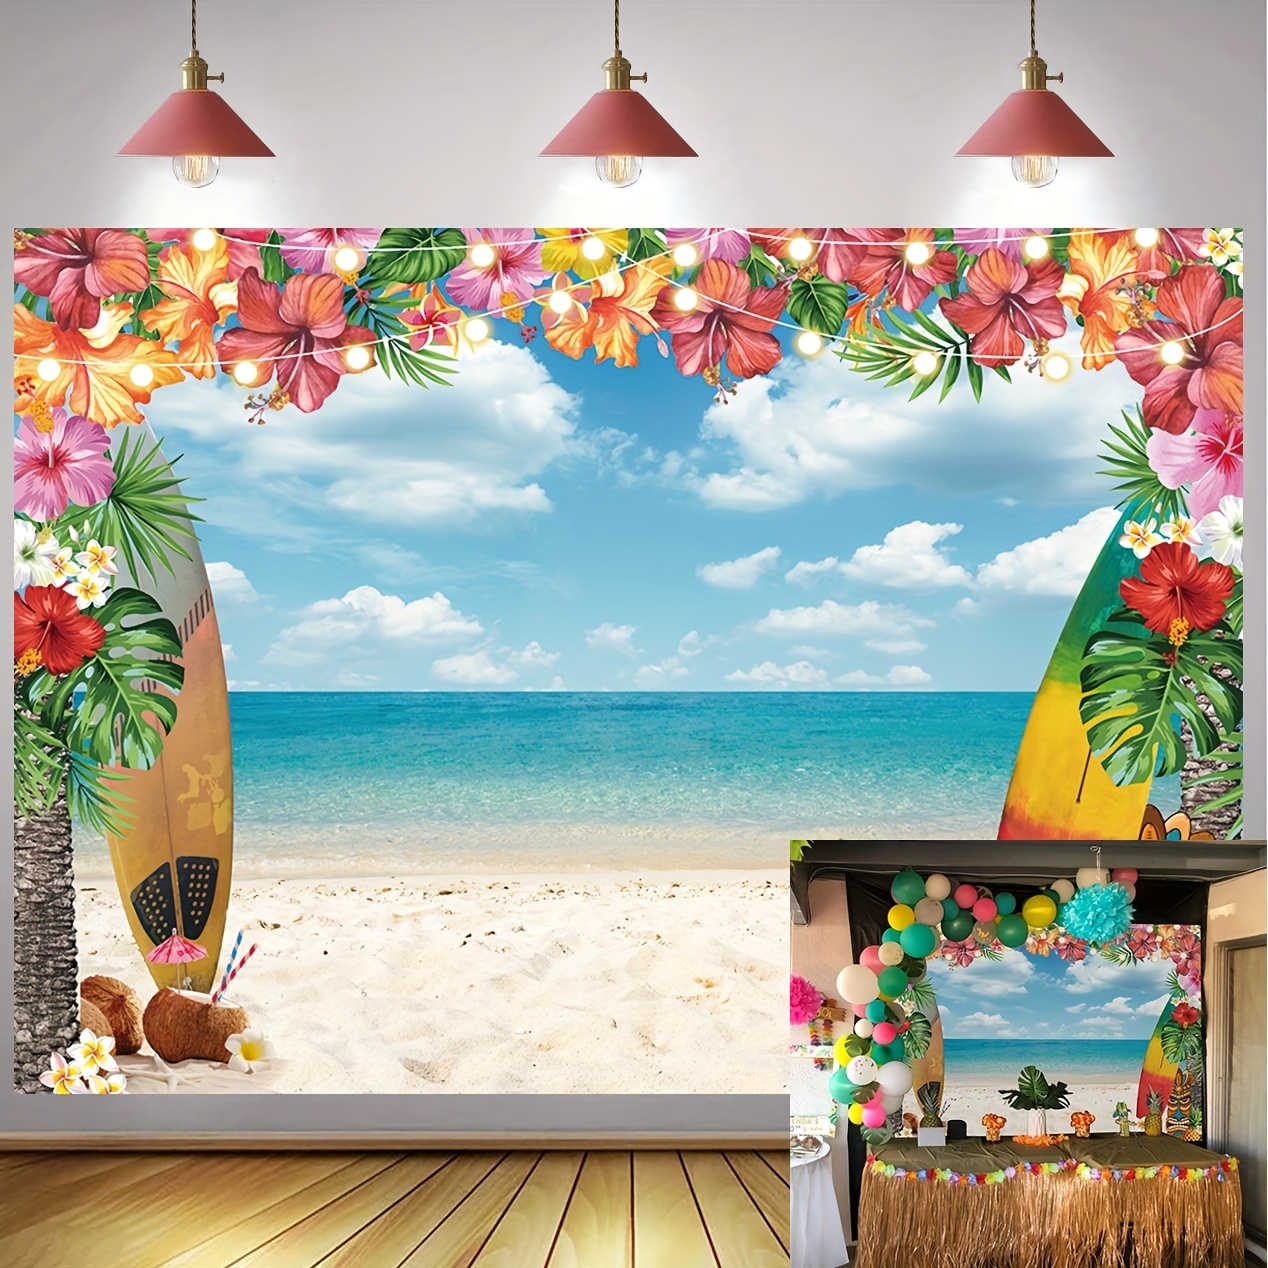 Decoraciones de fiesta hawaiana Luau, kit de suministros de fiesta de  verano Aloha con temática de playa tropical, incluye falda de mesa, telón  de